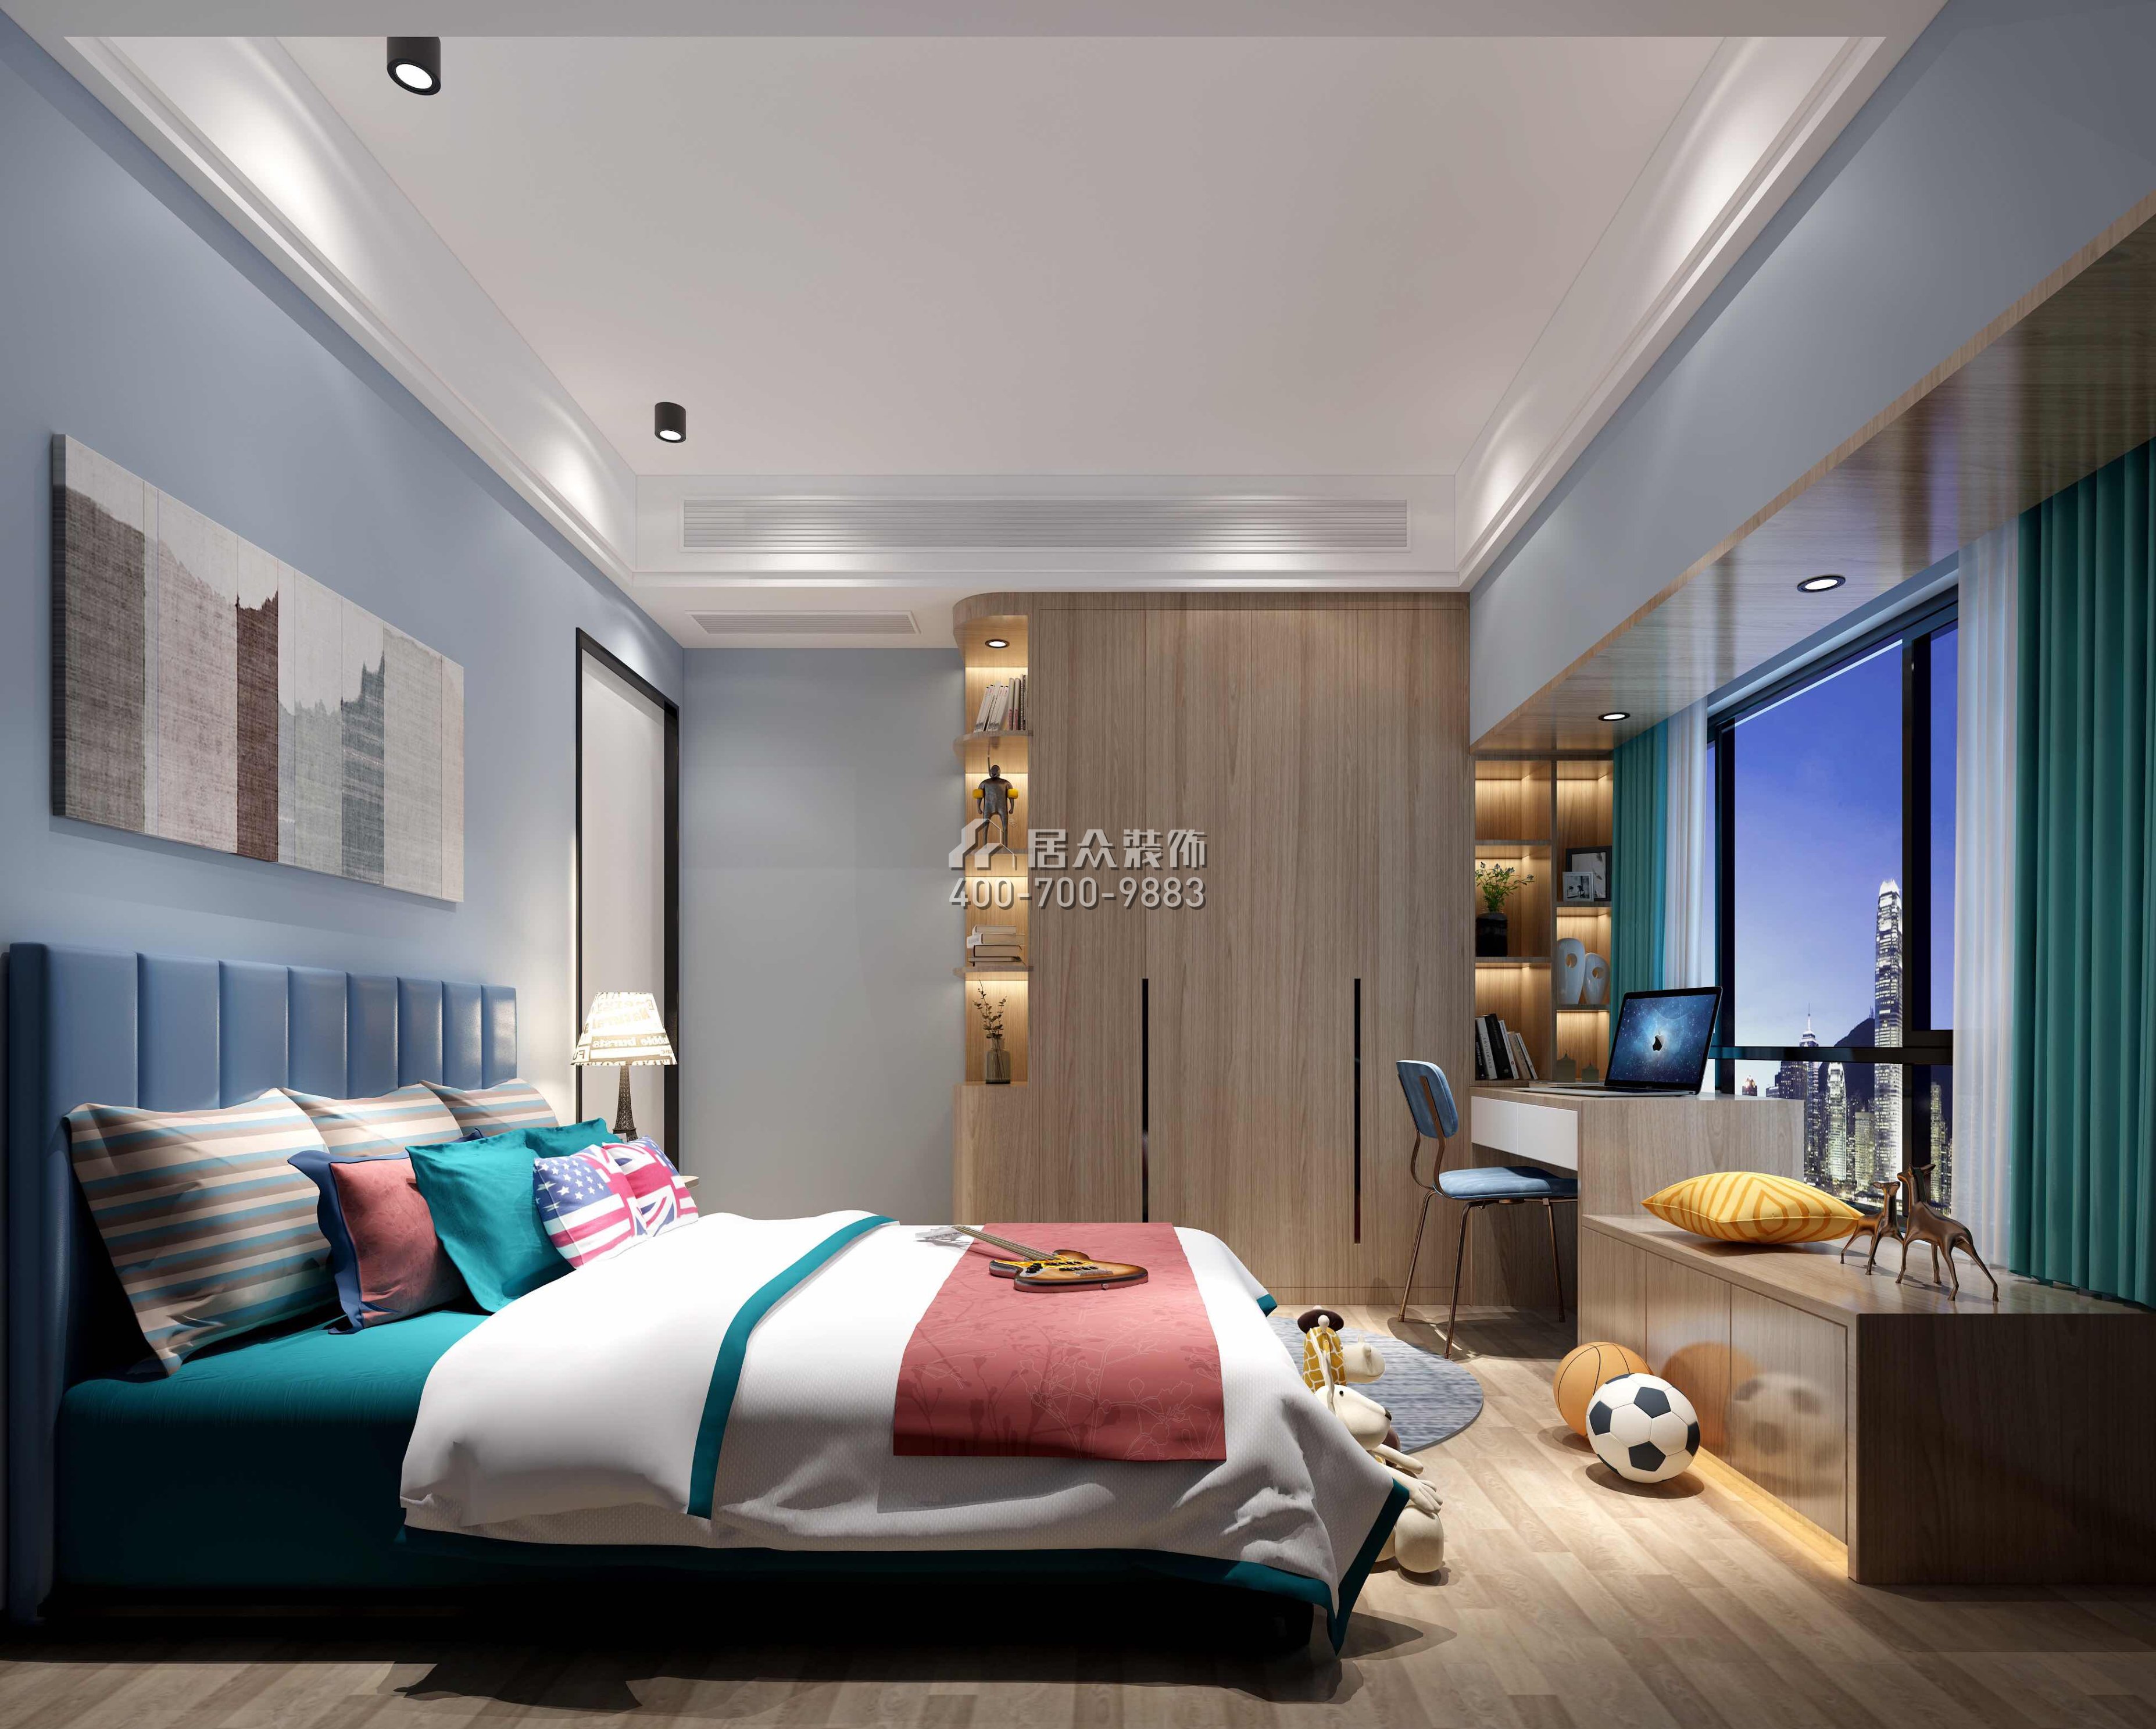 中海鹿丹名苑120平方米其他风格平层户型卧室装修效果图